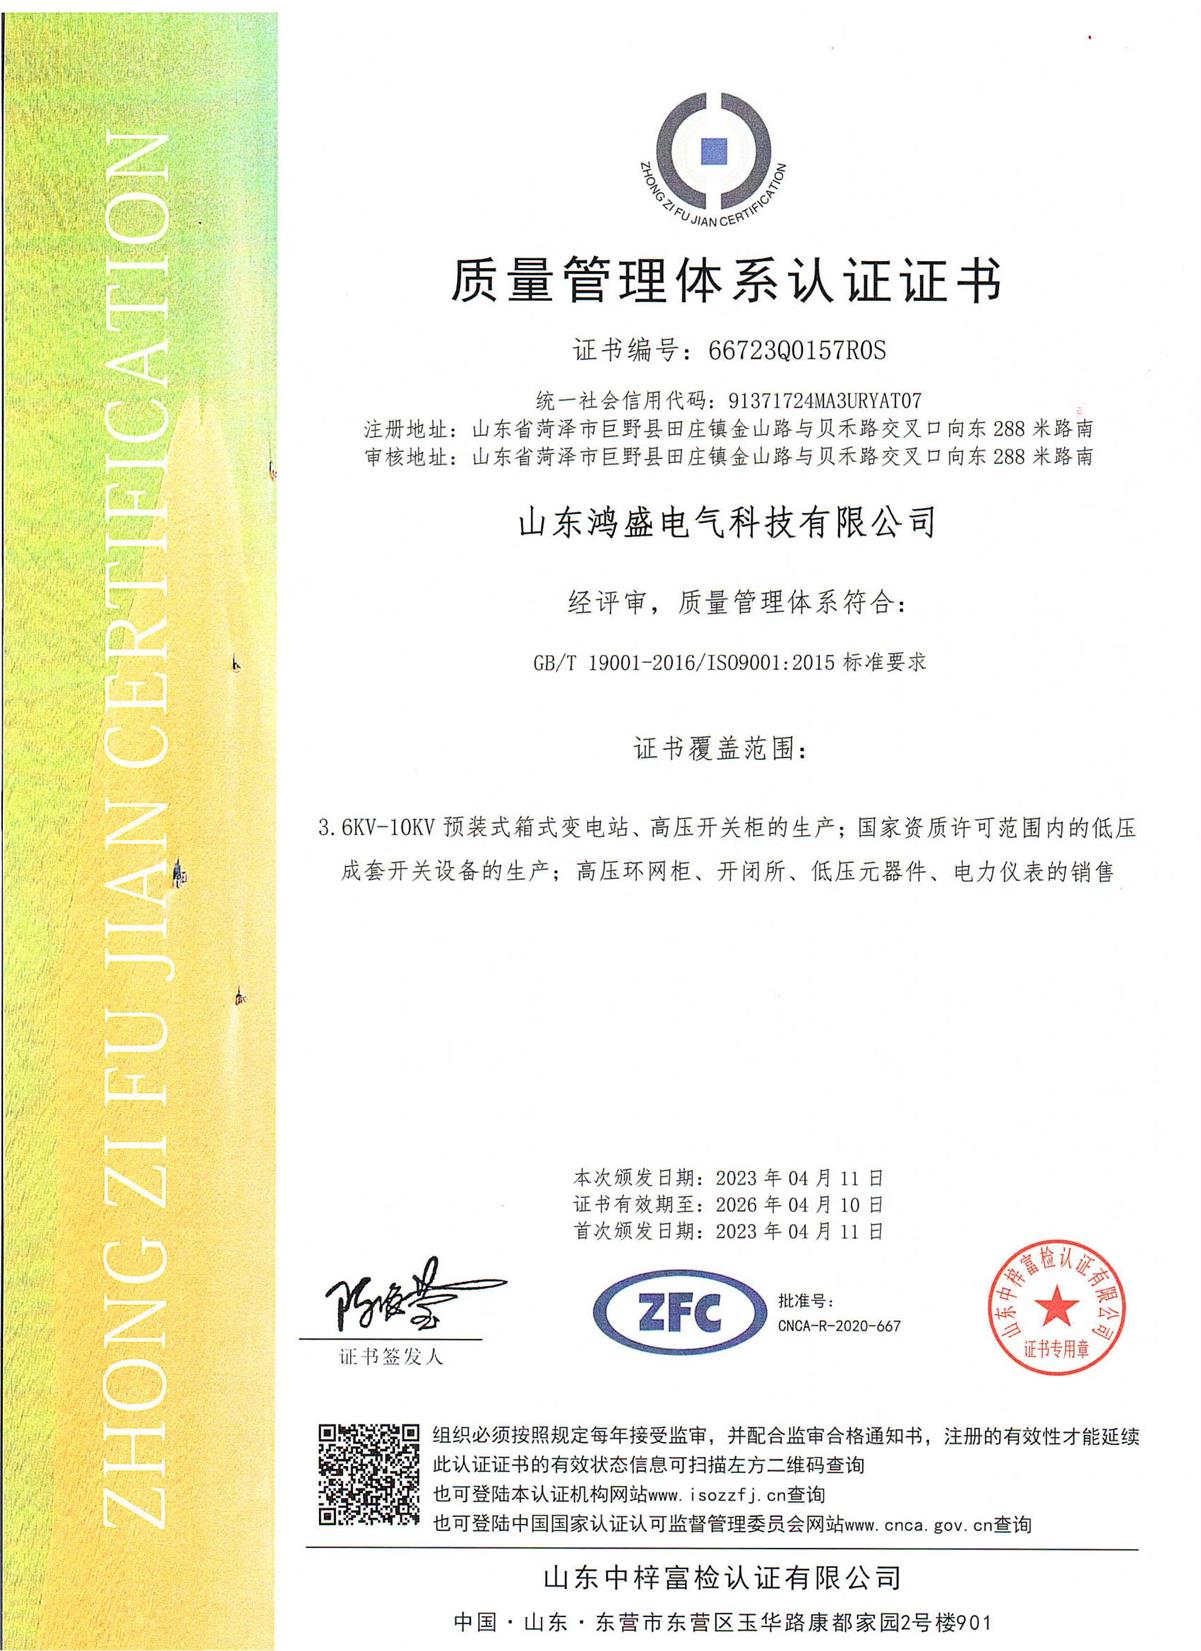 鸿盛电气的ISO9001:2015质量管理体系认证